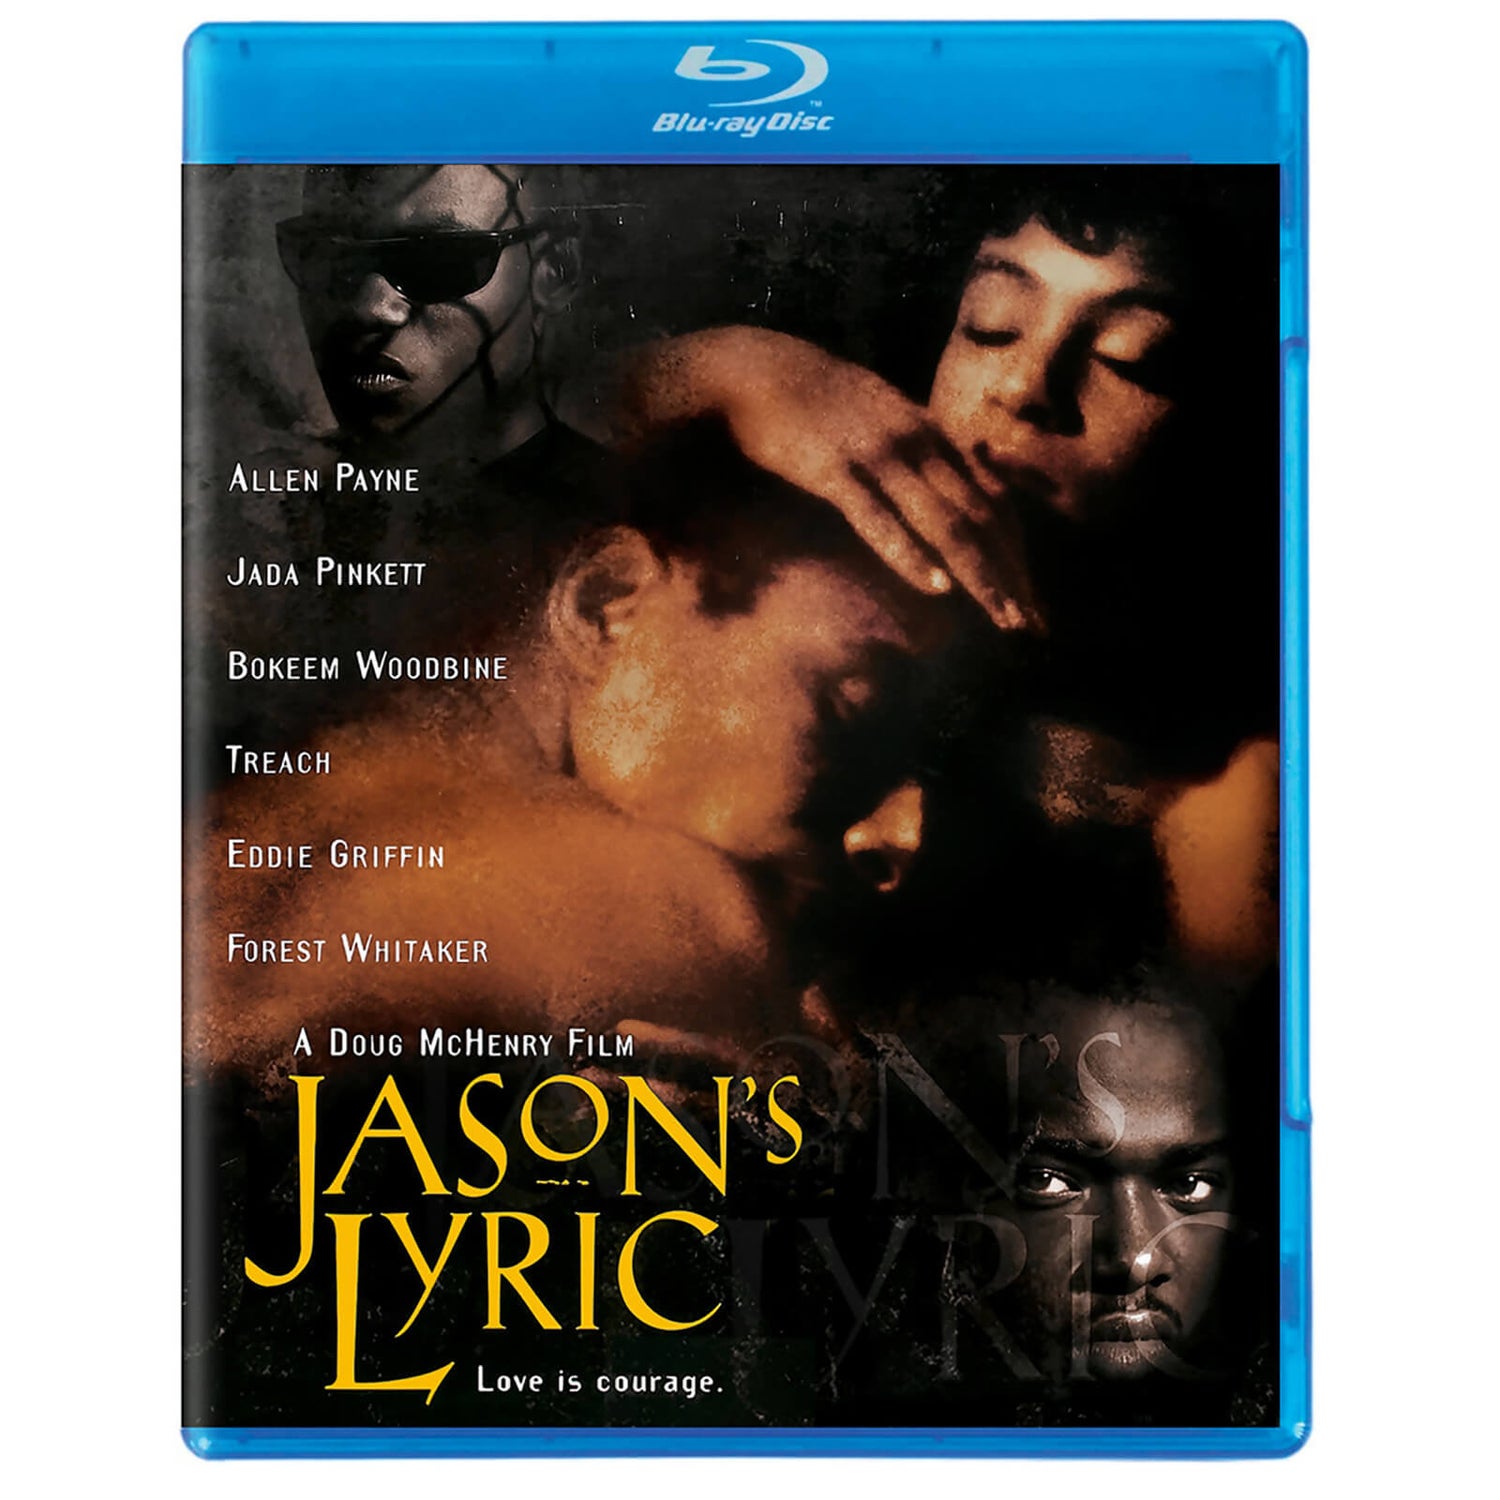 Jason's Lyric (1994)